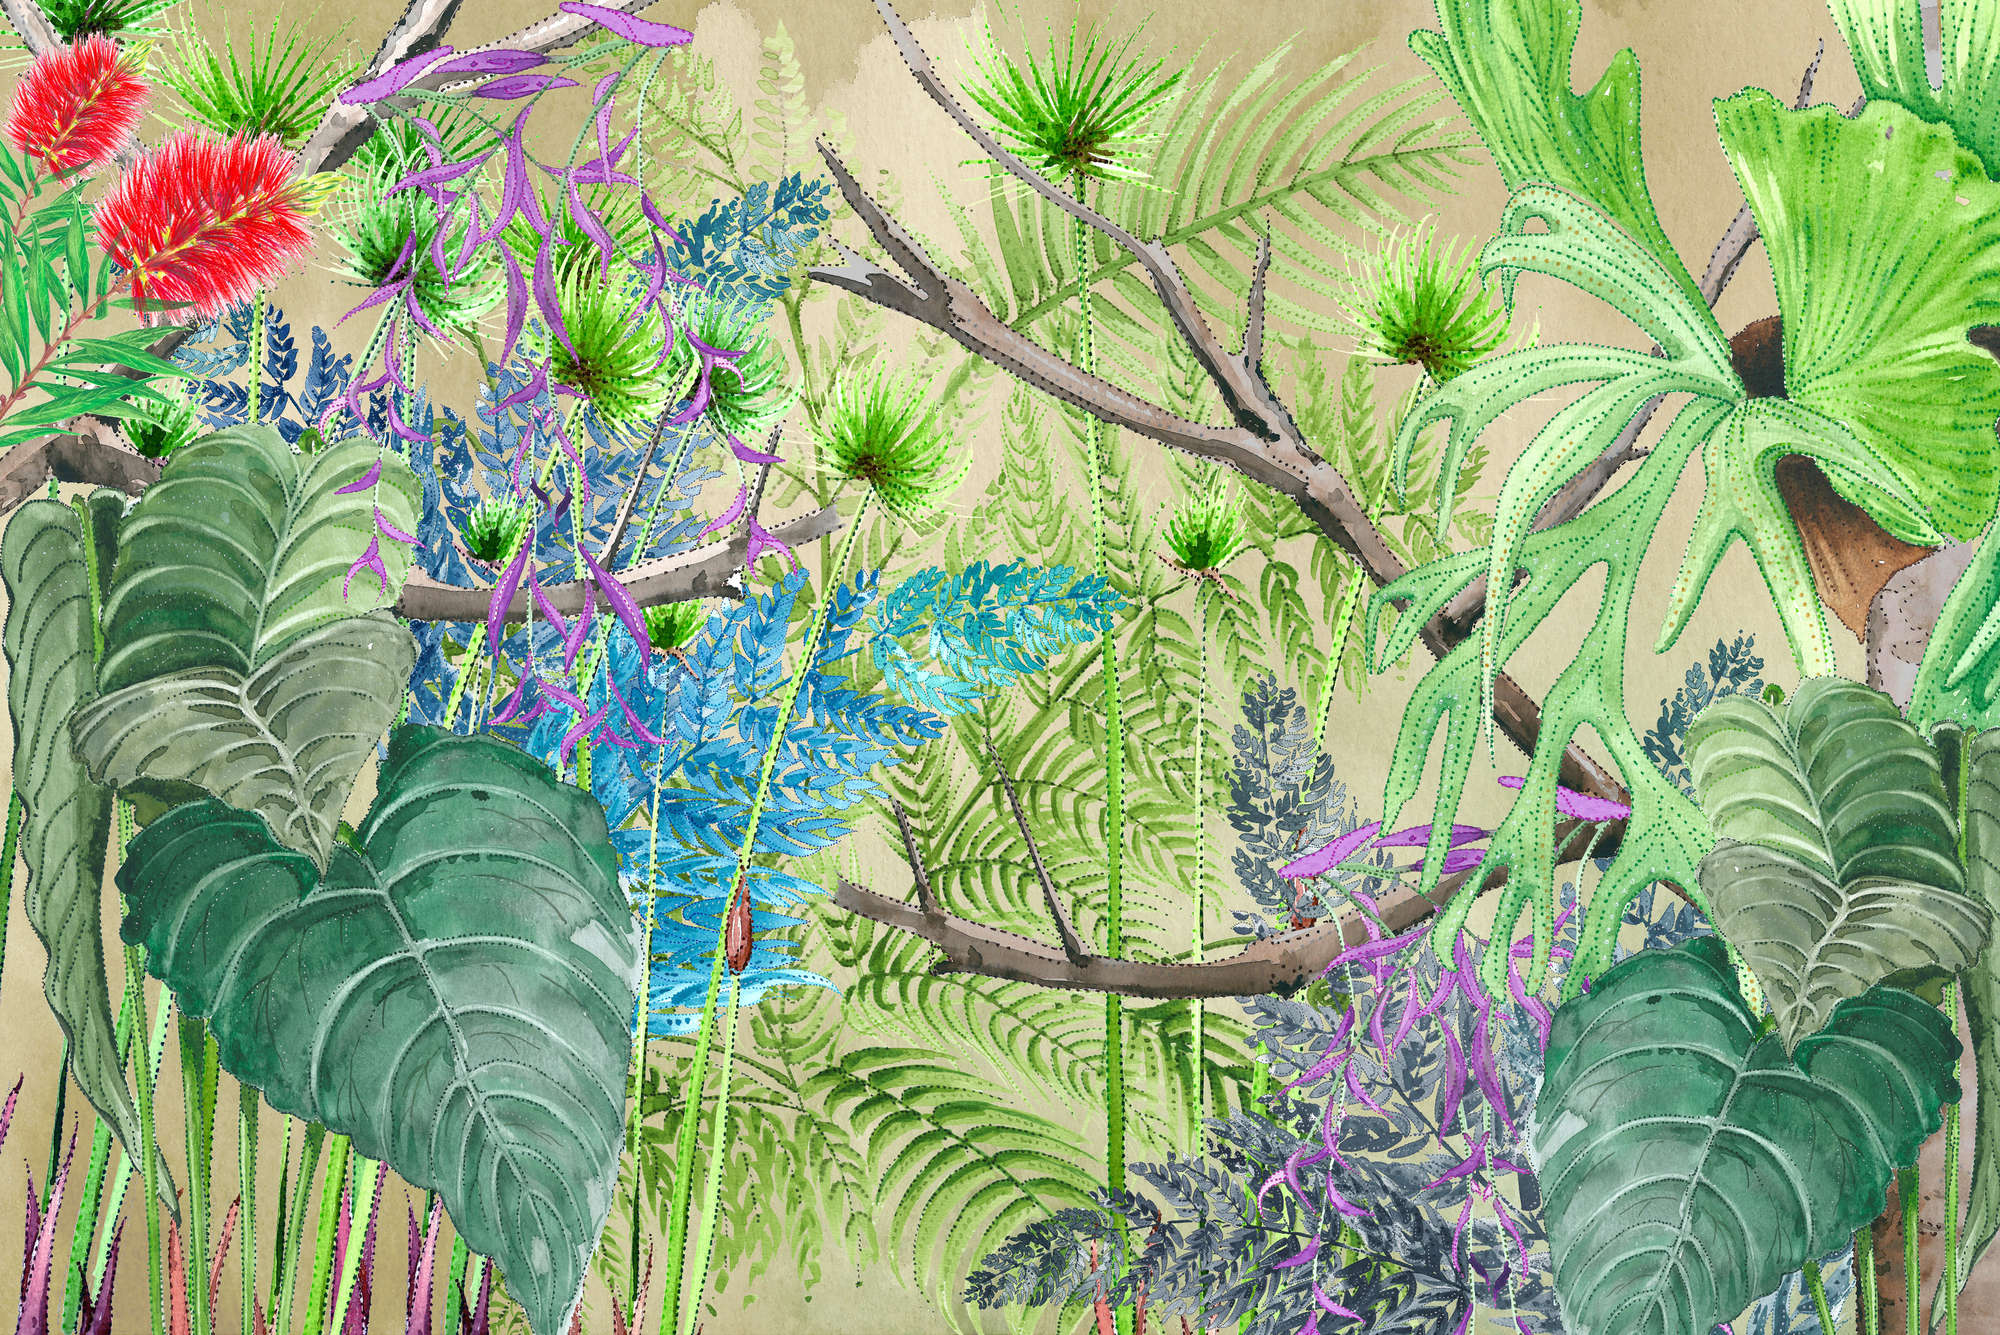             Dschungel Fototapete mit Blumen in Blau und Grün auf Perlmutt Glattvlies
        